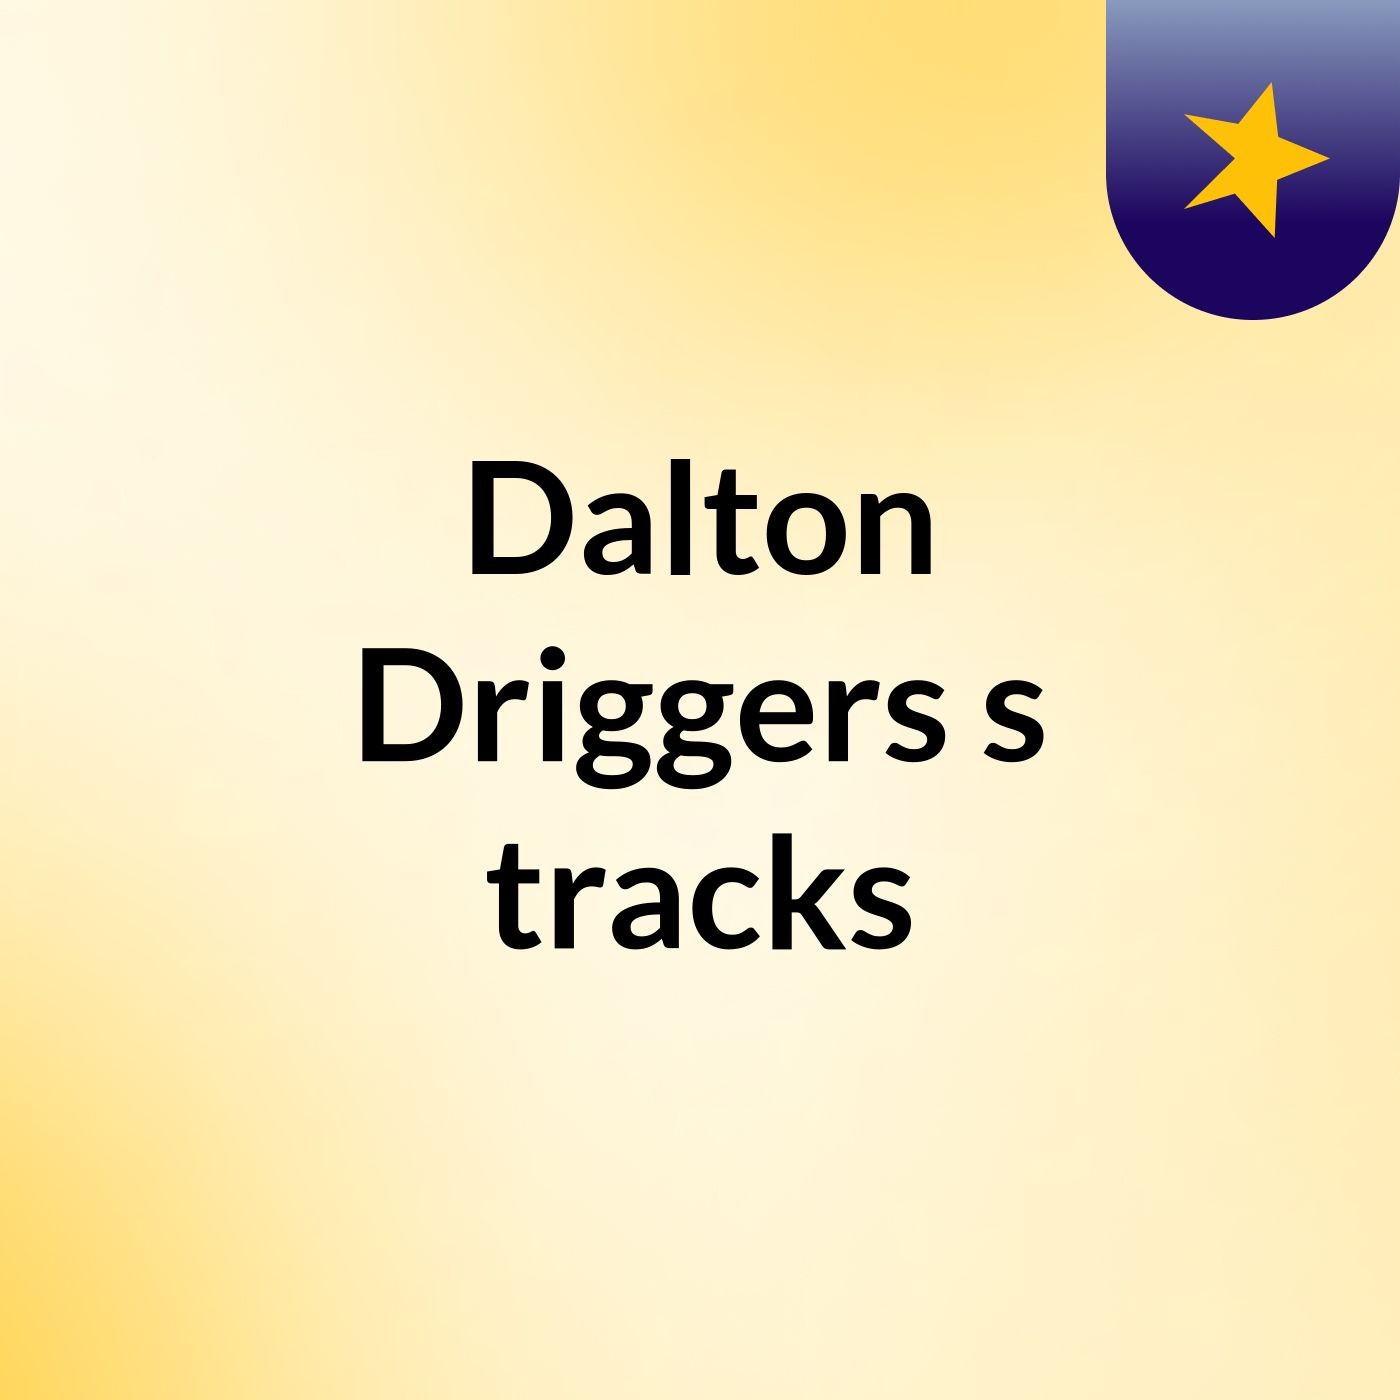 Dalton Driggers's tracks:D.L.D